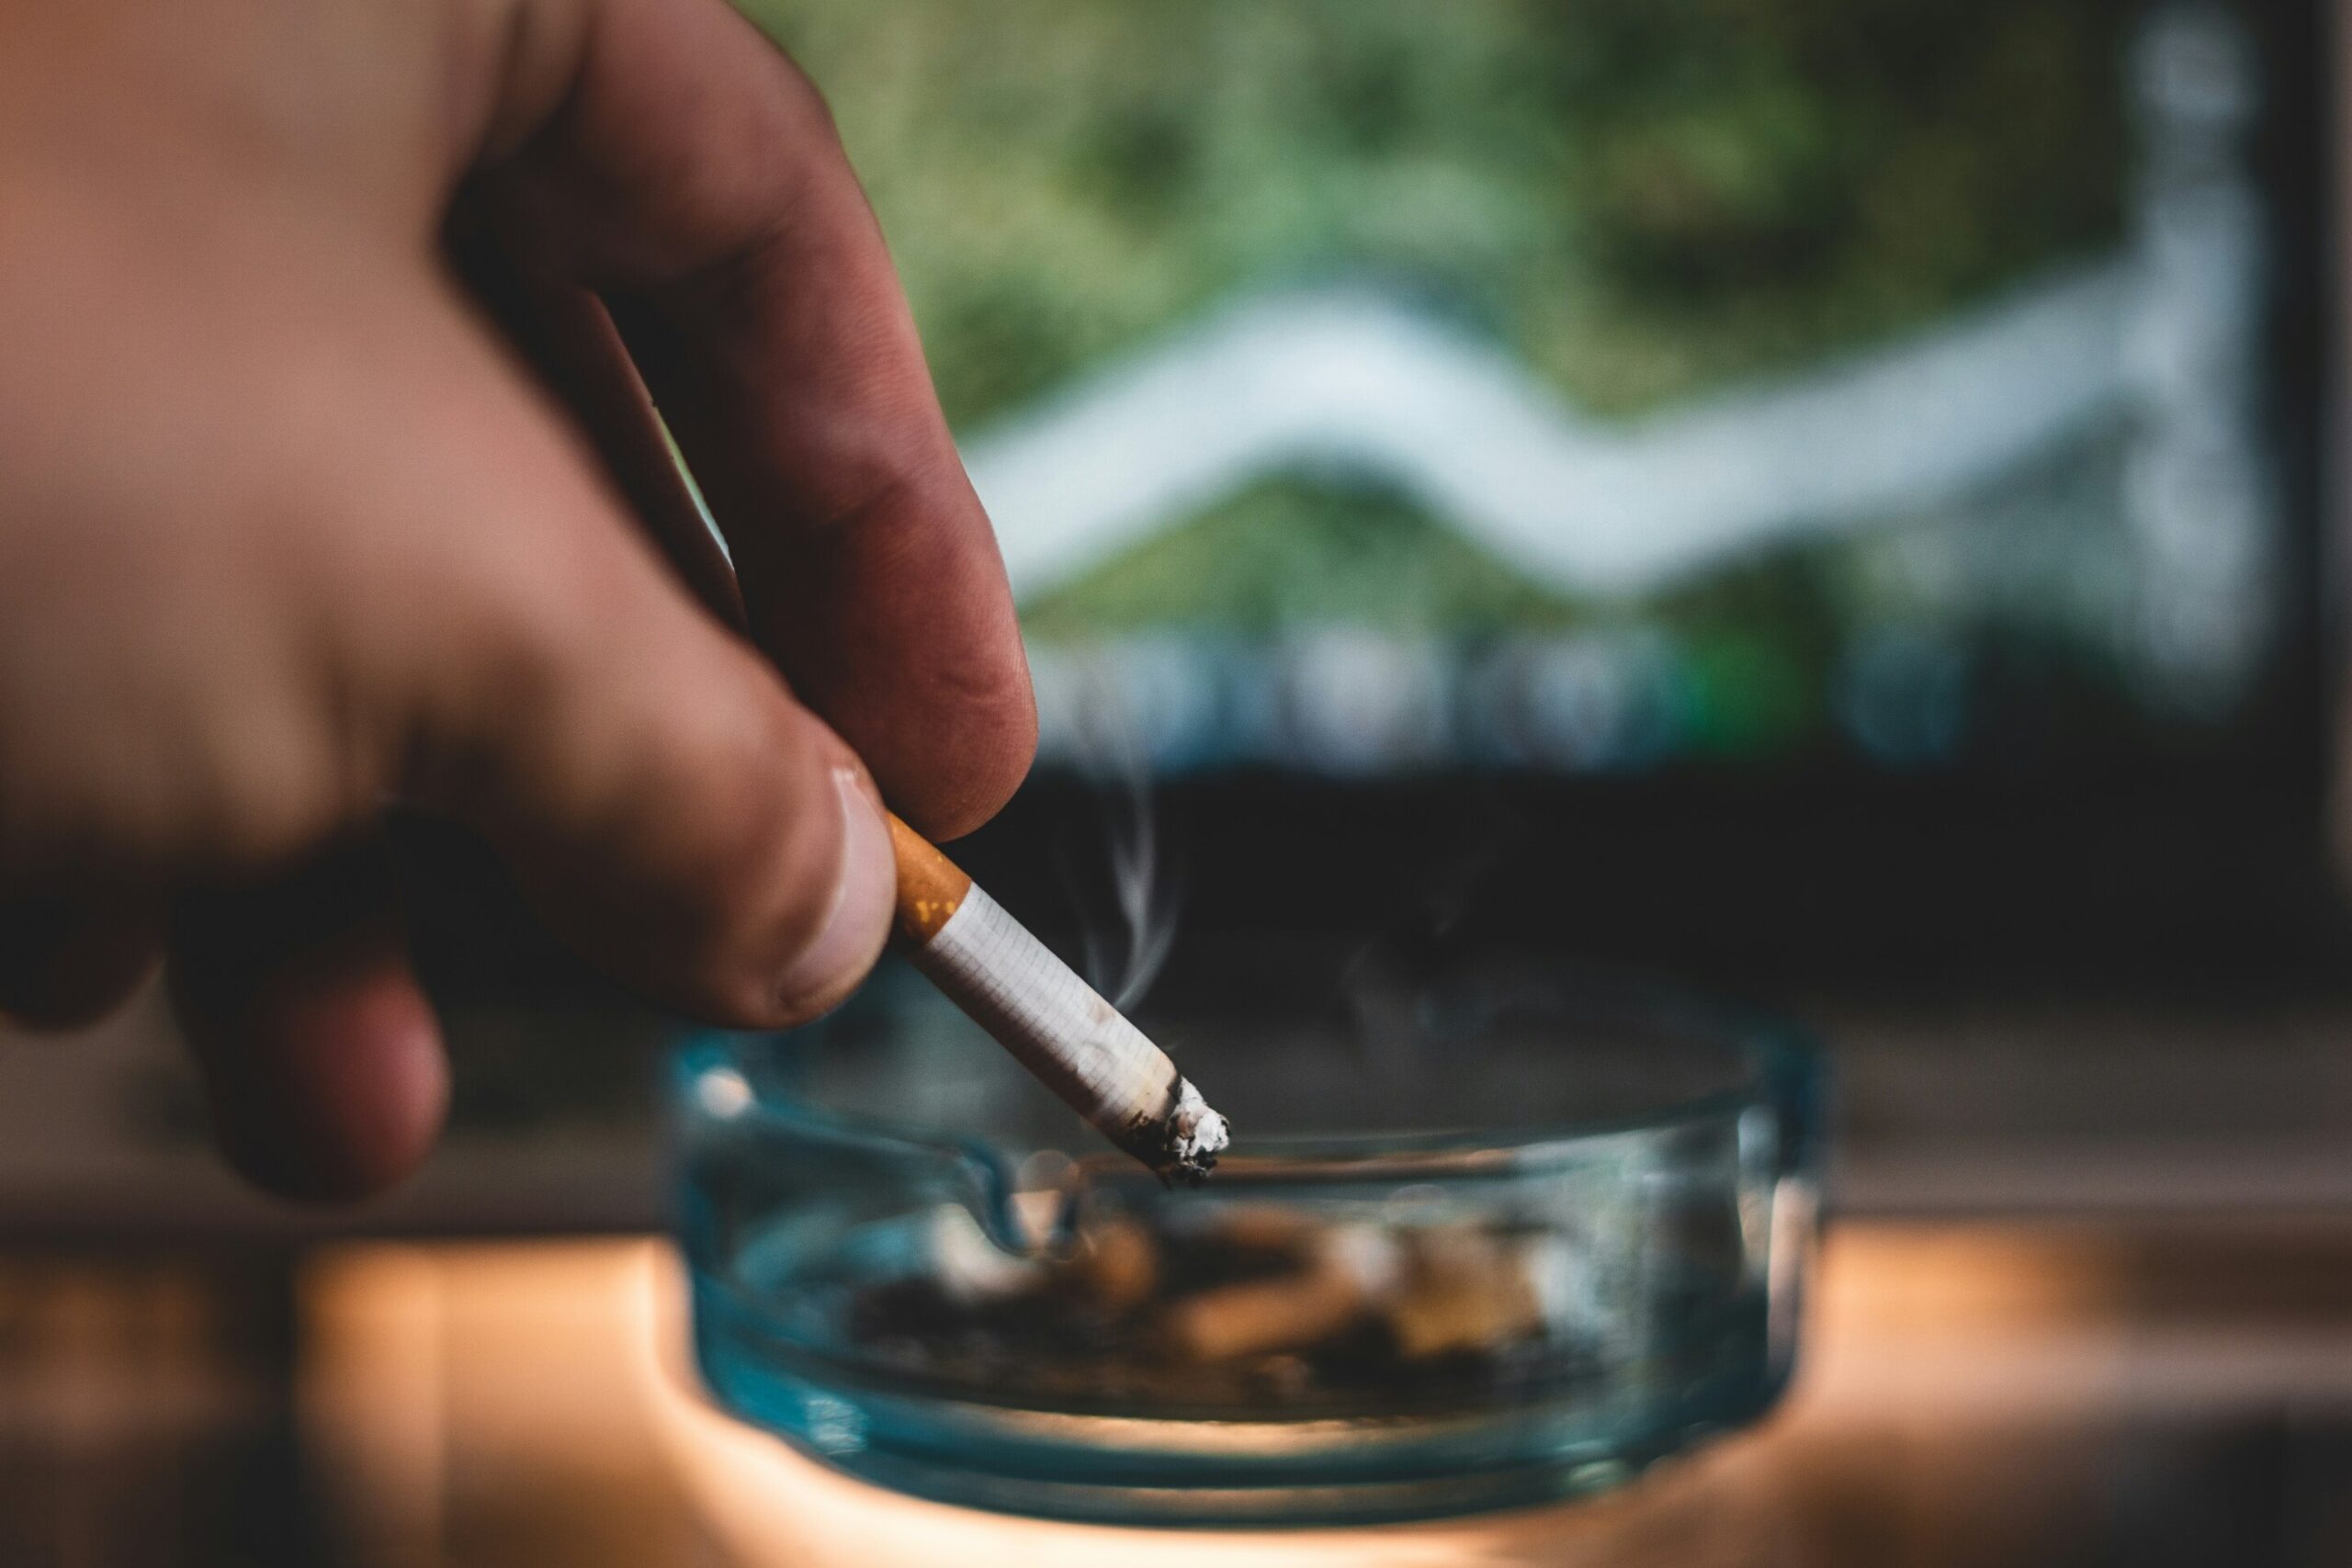 Un essai révèle que l'augmentation ou la modification du traitement pour arrêter de fumer aide les fumeurs persistants à arrêter